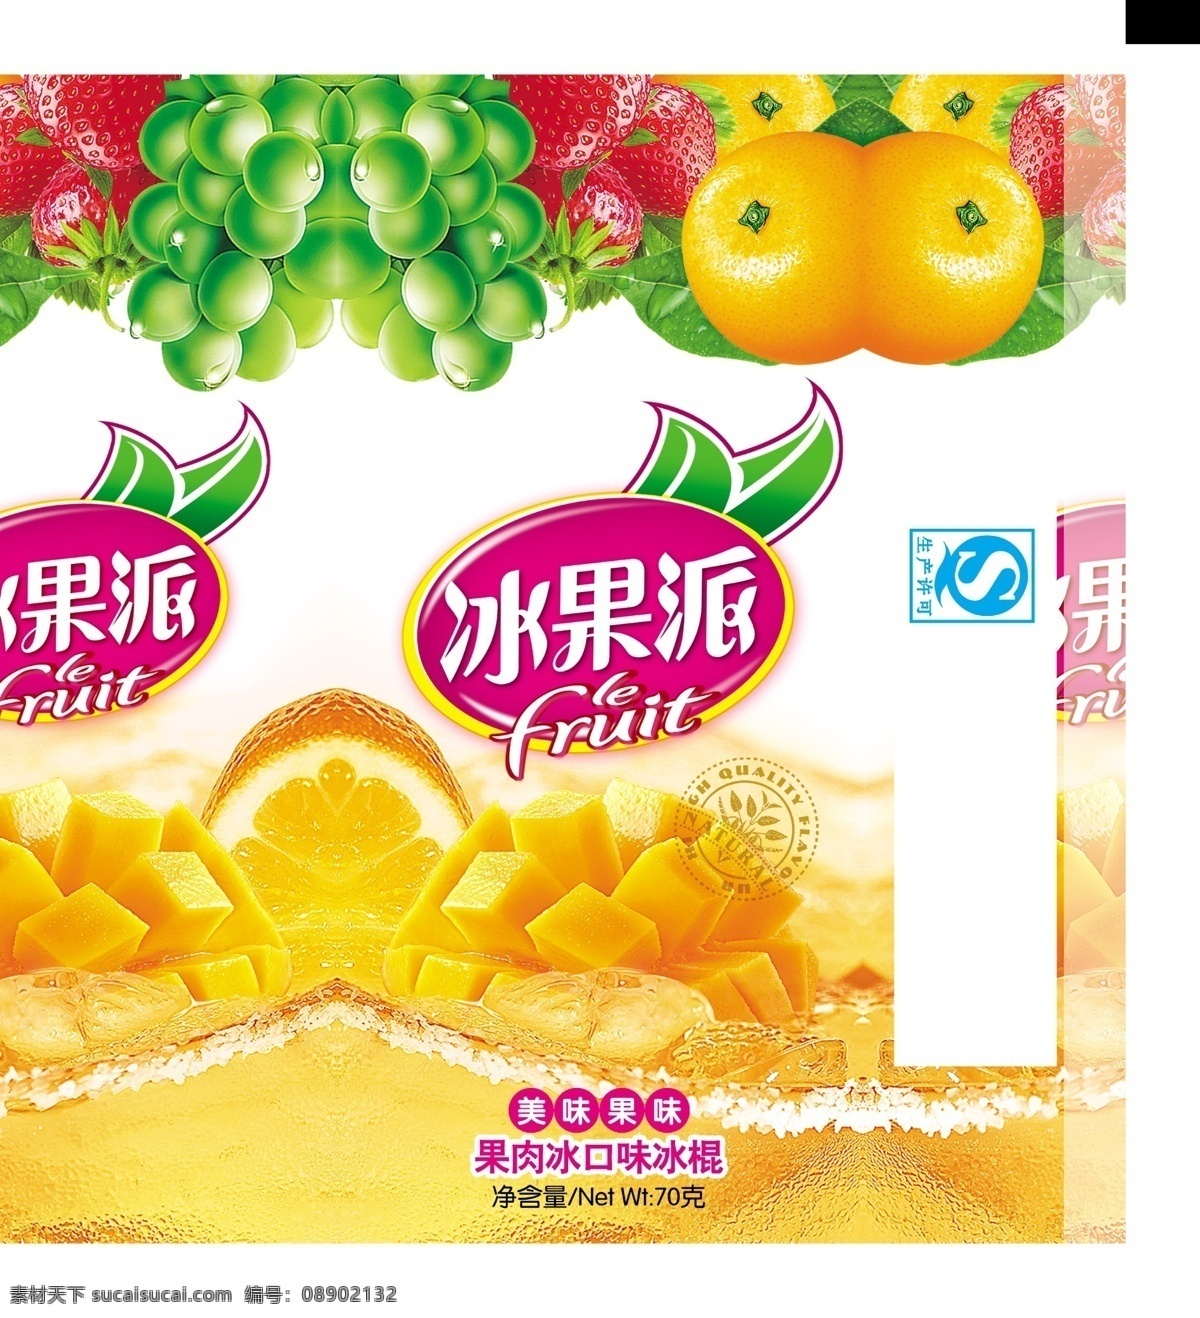 冰果 派 冰棍 包装 冰果派 冰棍包装 水果 菠萝 水果海报 水果宣传 白色